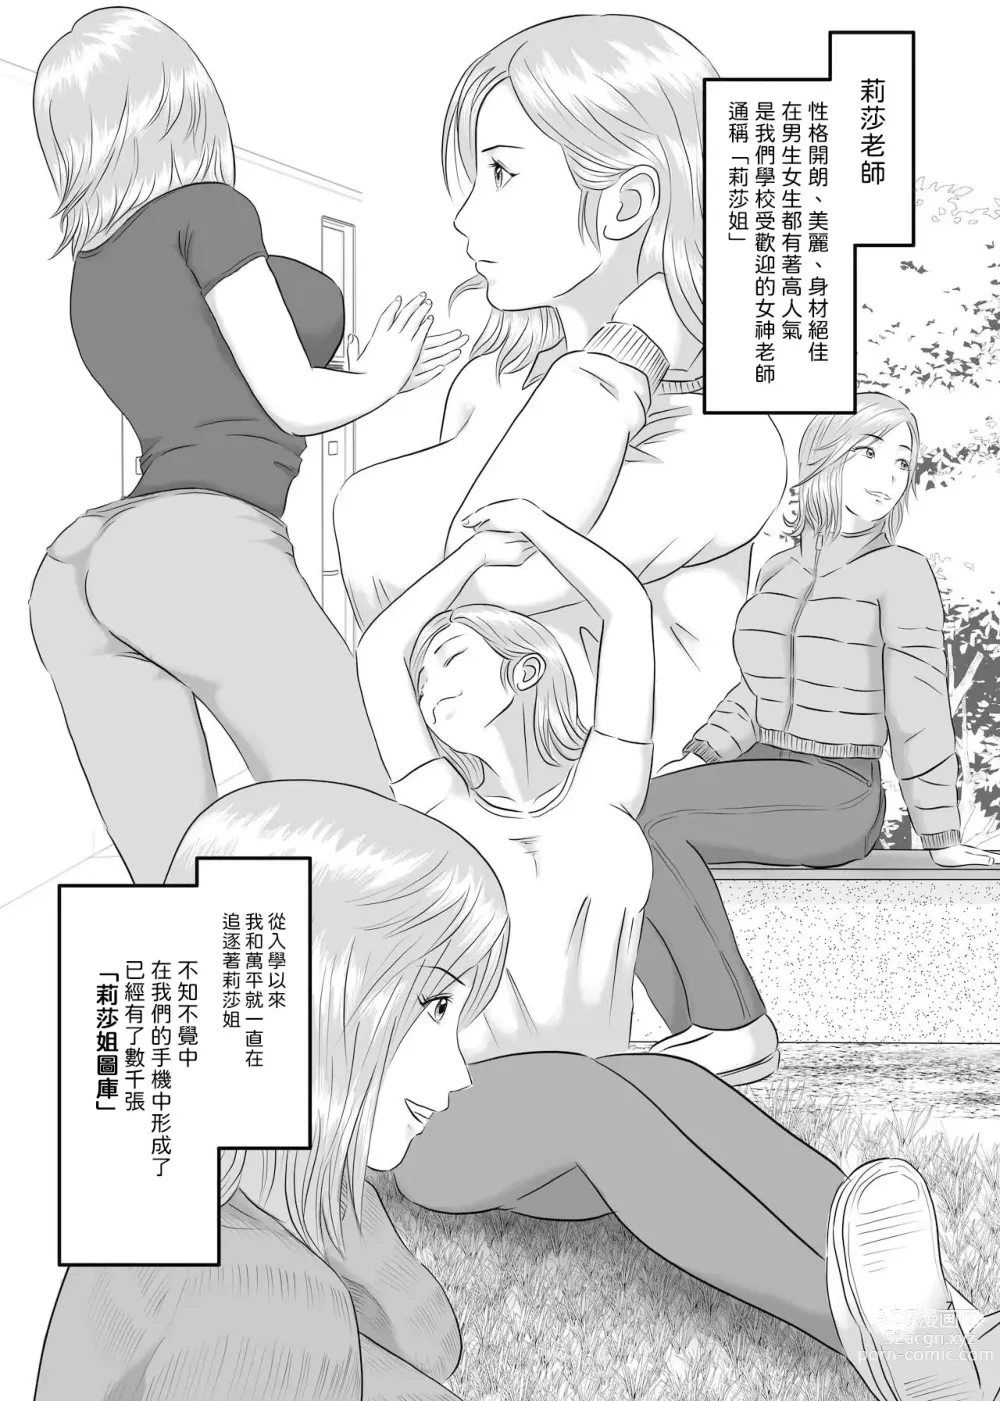 Page 7 of doujinshi 憧憬的對象已經結束了!